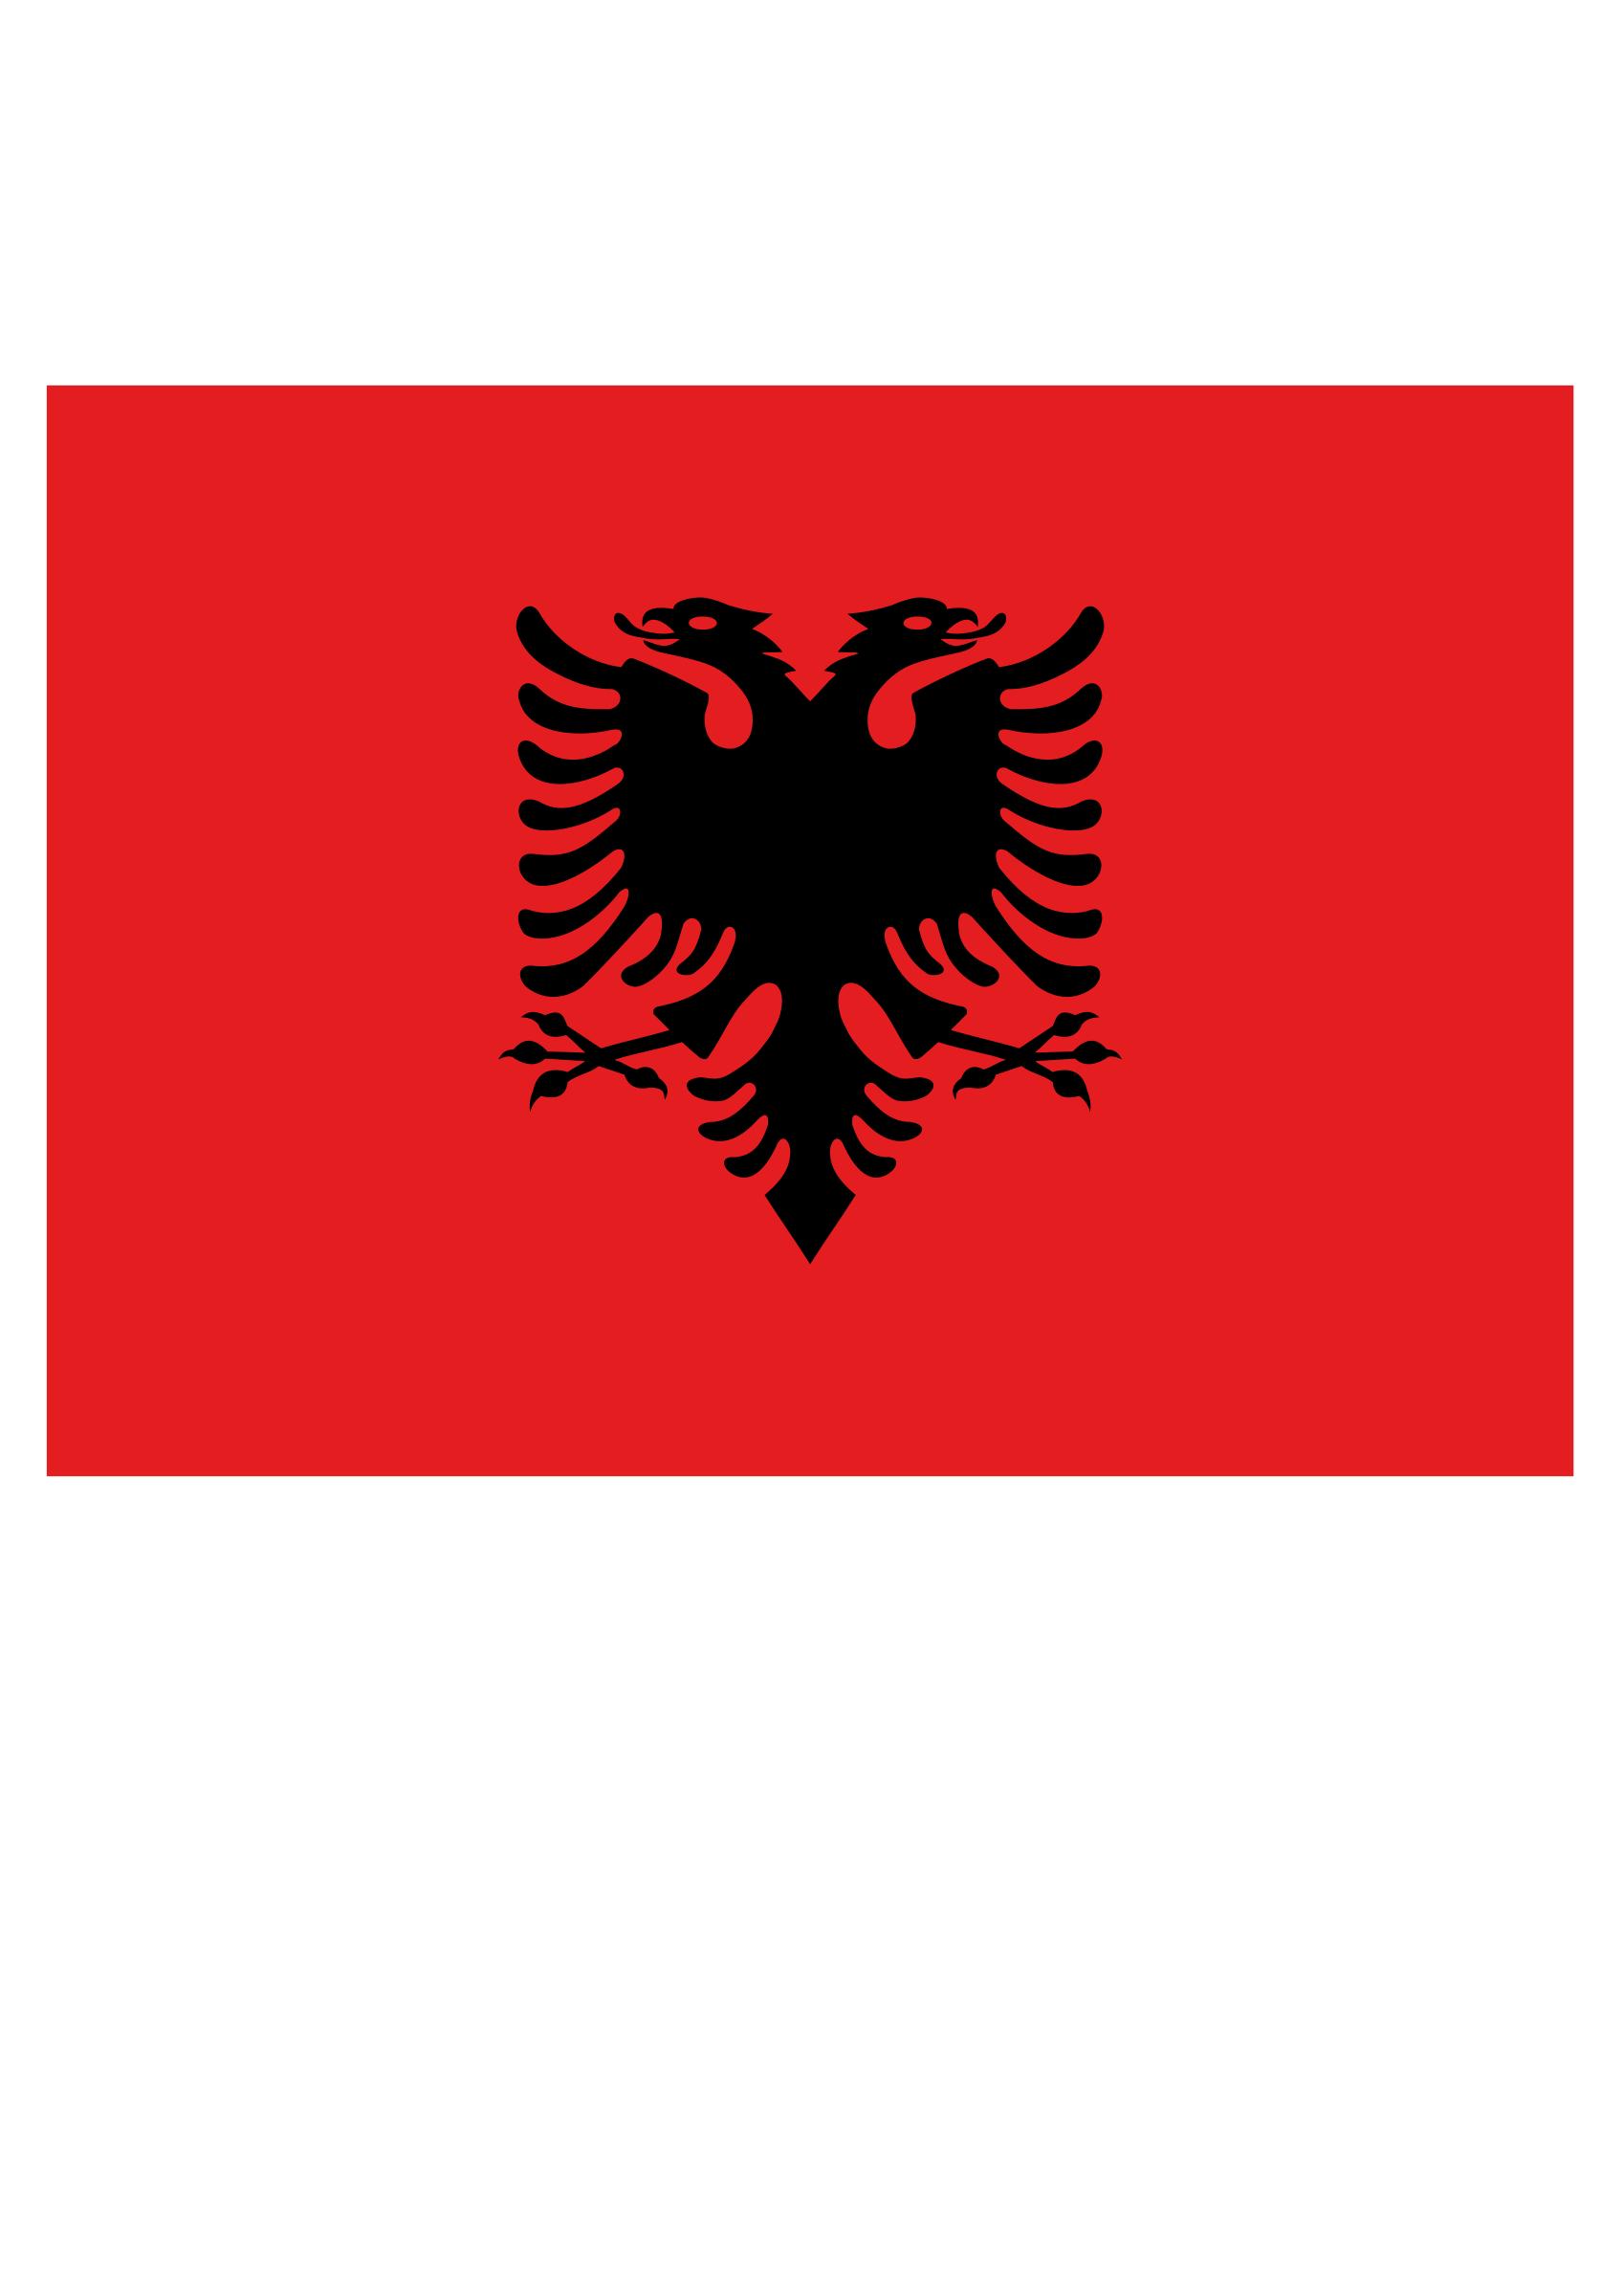 Flag of Albania - Flamuri shqiptar png icons